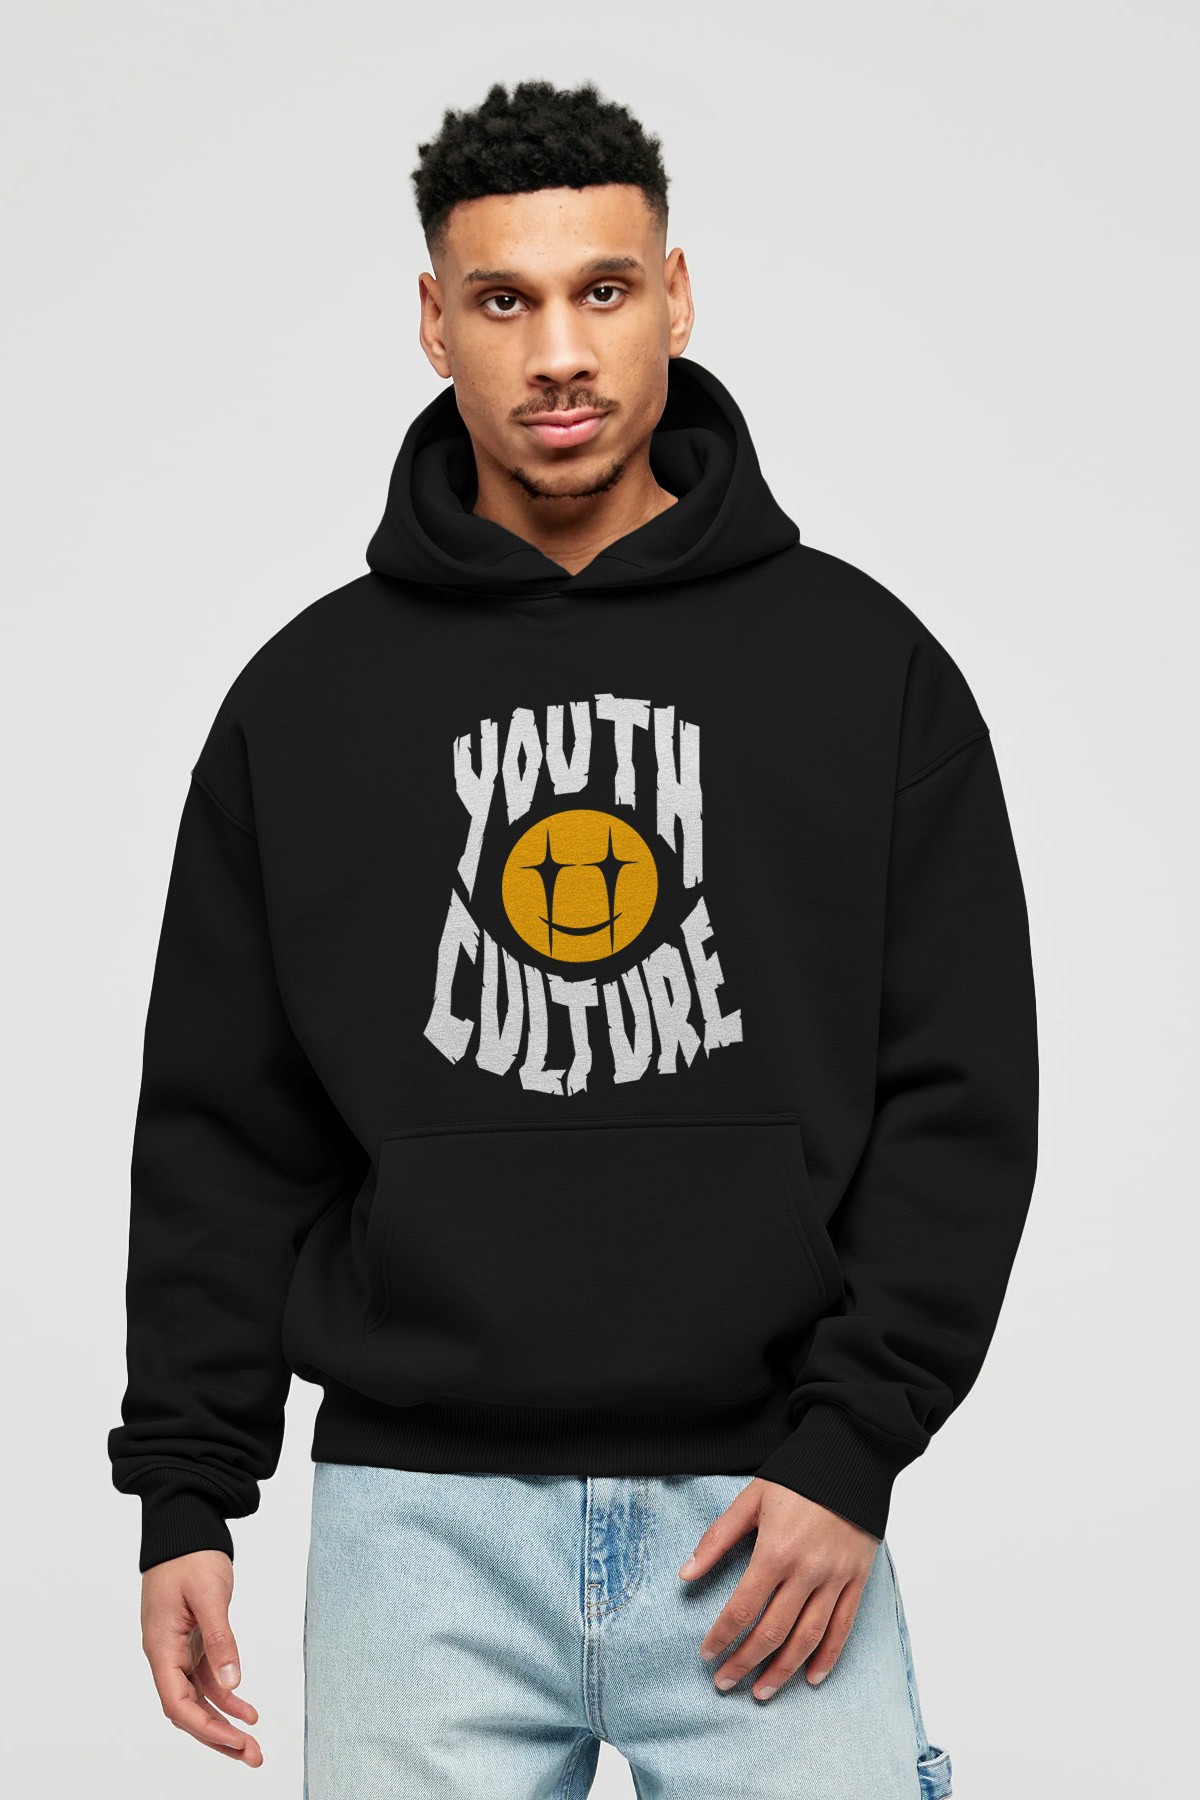 Youth Culture Ön Baskılı Hoodie Oversize Kapüşonlu Sweatshirt Erkek Kadın Unisex